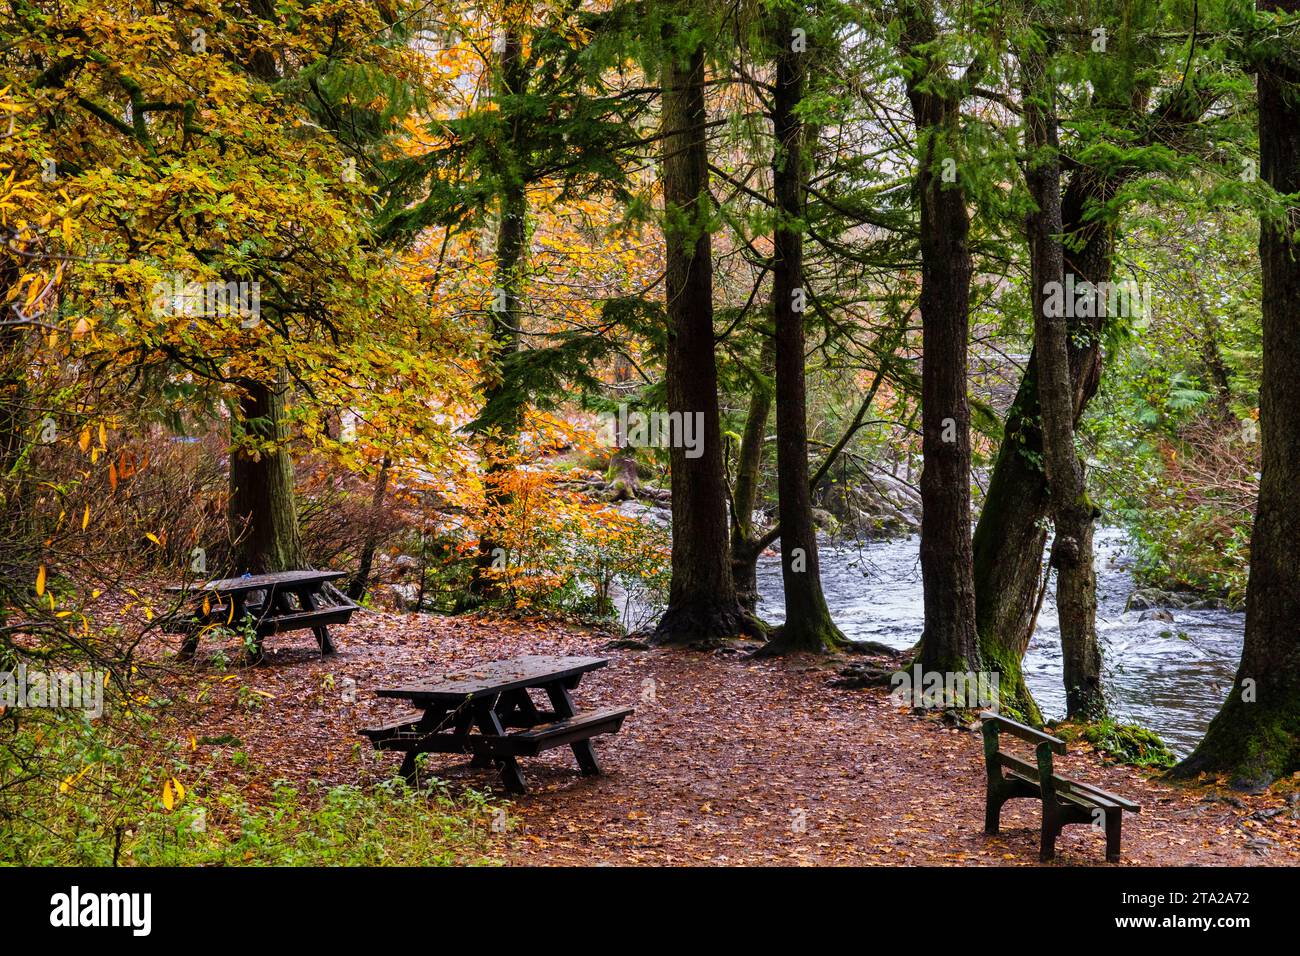 Bancs et tables de pique-nique sur Coed Tan Dinas promenade dans les bois au bord de la rivière Afon Llugwy en automne. Betws-y-Coed, Conwy, pays de Galles, Royaume-Uni, Grande-Bretagne Banque D'Images